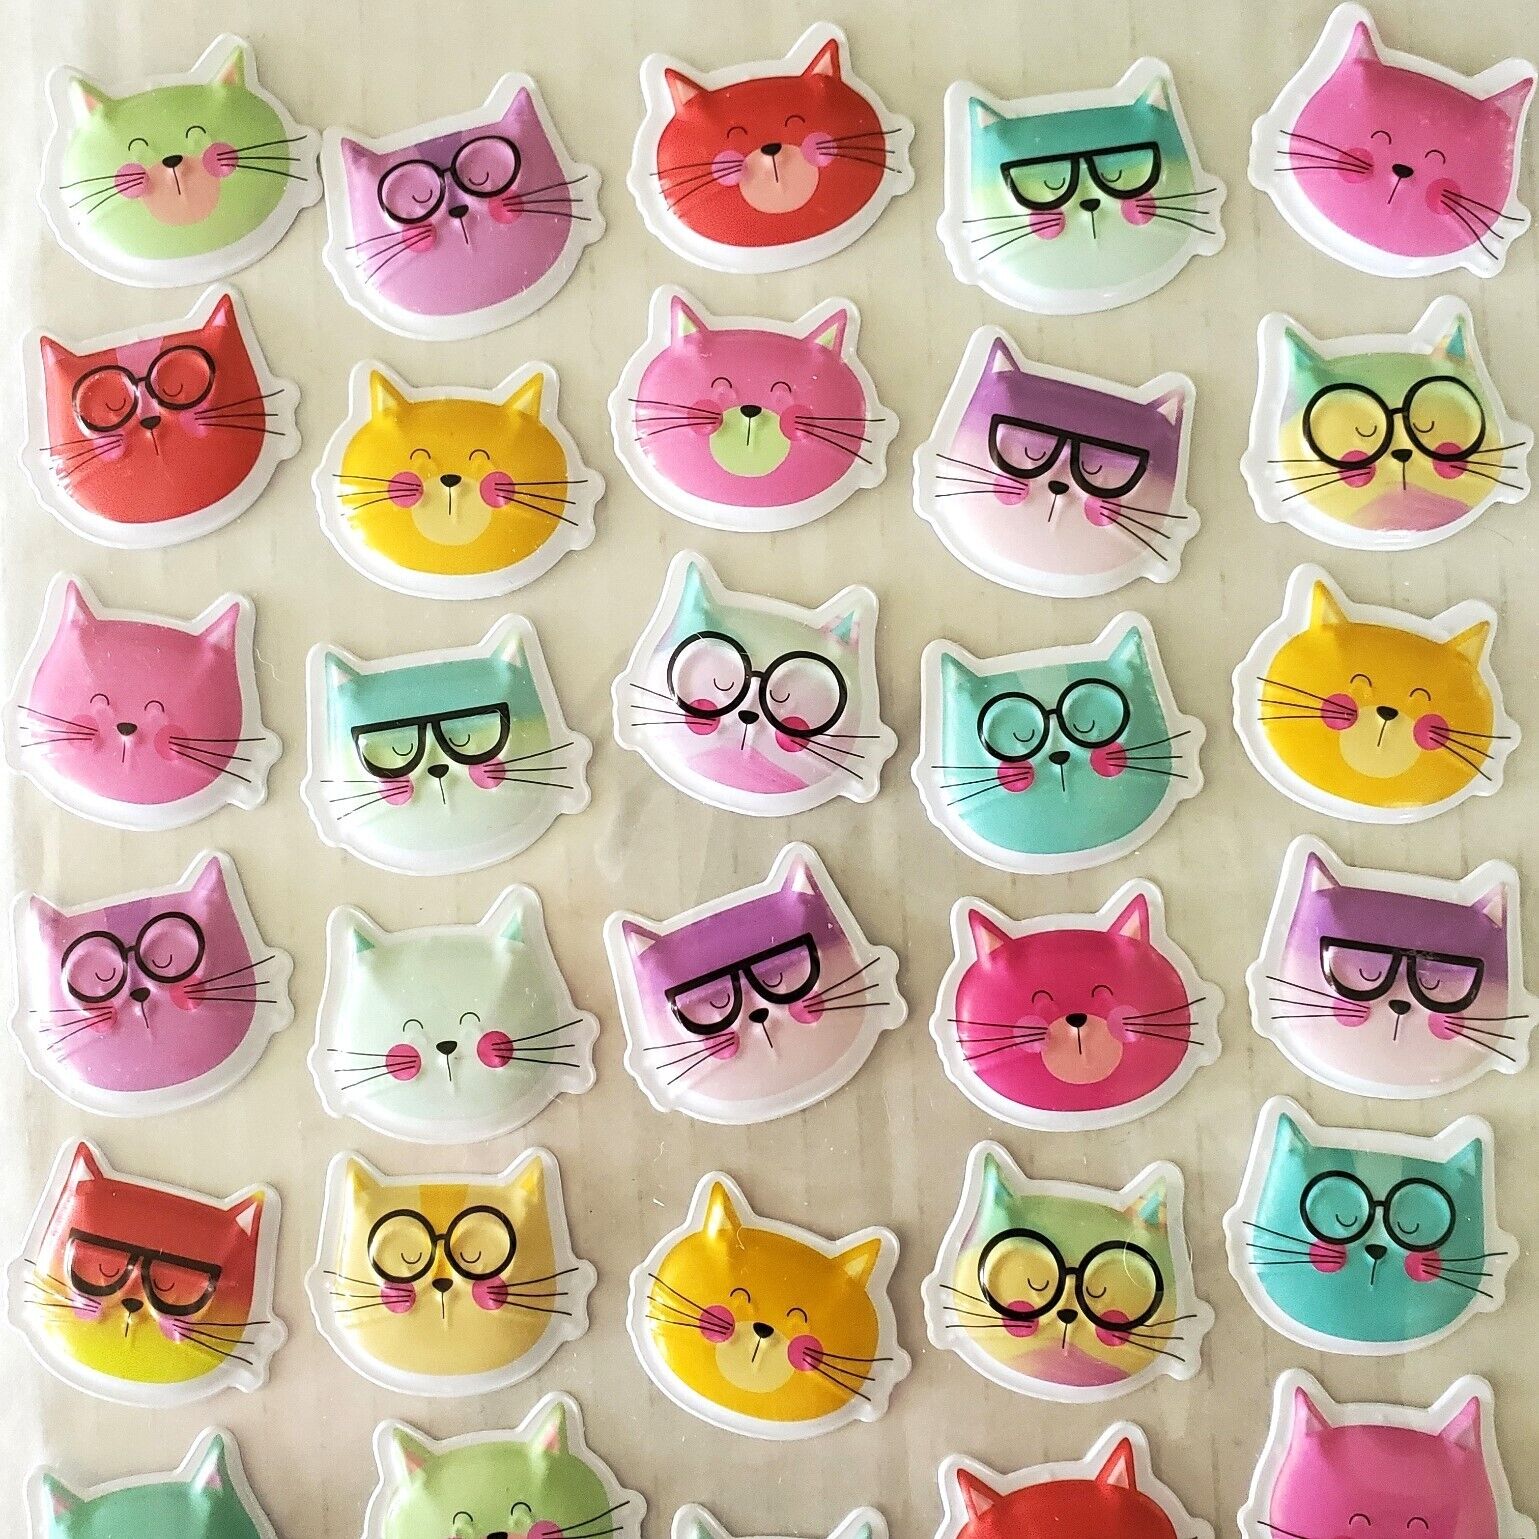 Puffy Sticker Lot Cats Robots Kittens Collecting Scrapbooking Junk Journal